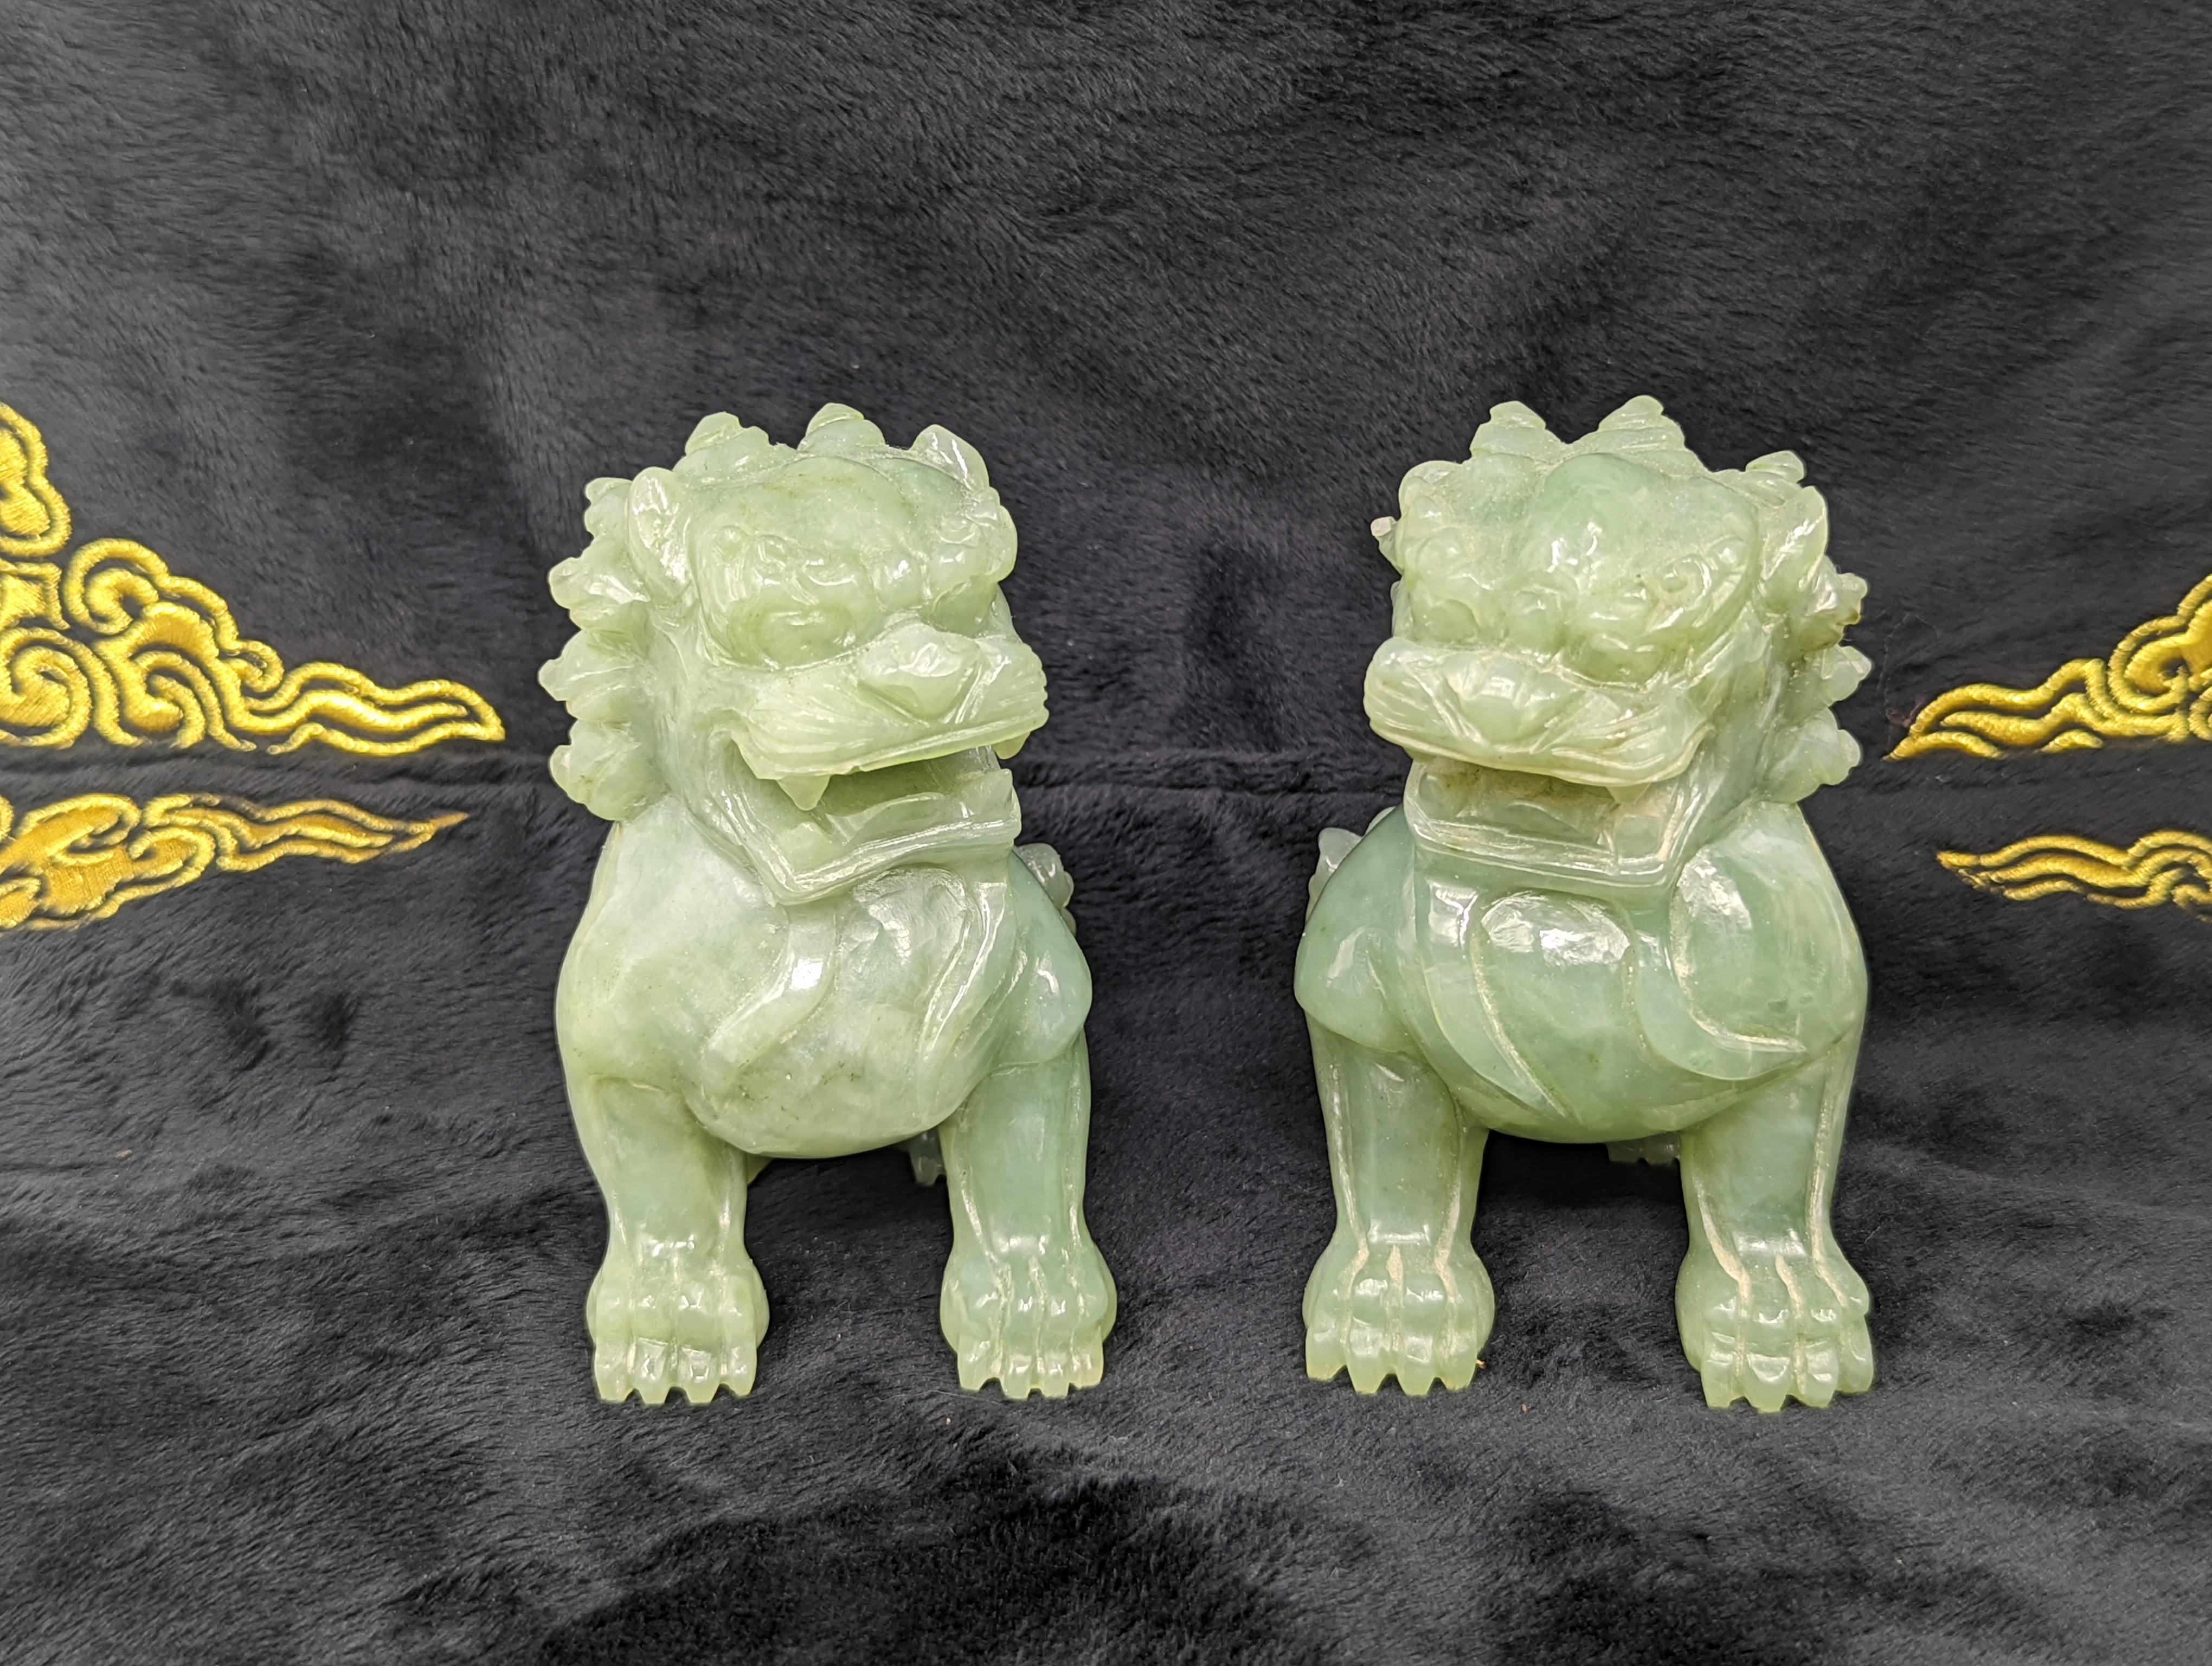 Cette exquise paire de lions gardiens en jade céladon date du début de la République de Chine et témoigne du savoir-faire de l'époque. Les lions sont minutieusement sculptés dans du jade céladon de haute qualité, un matériau révéré pour sa teinte